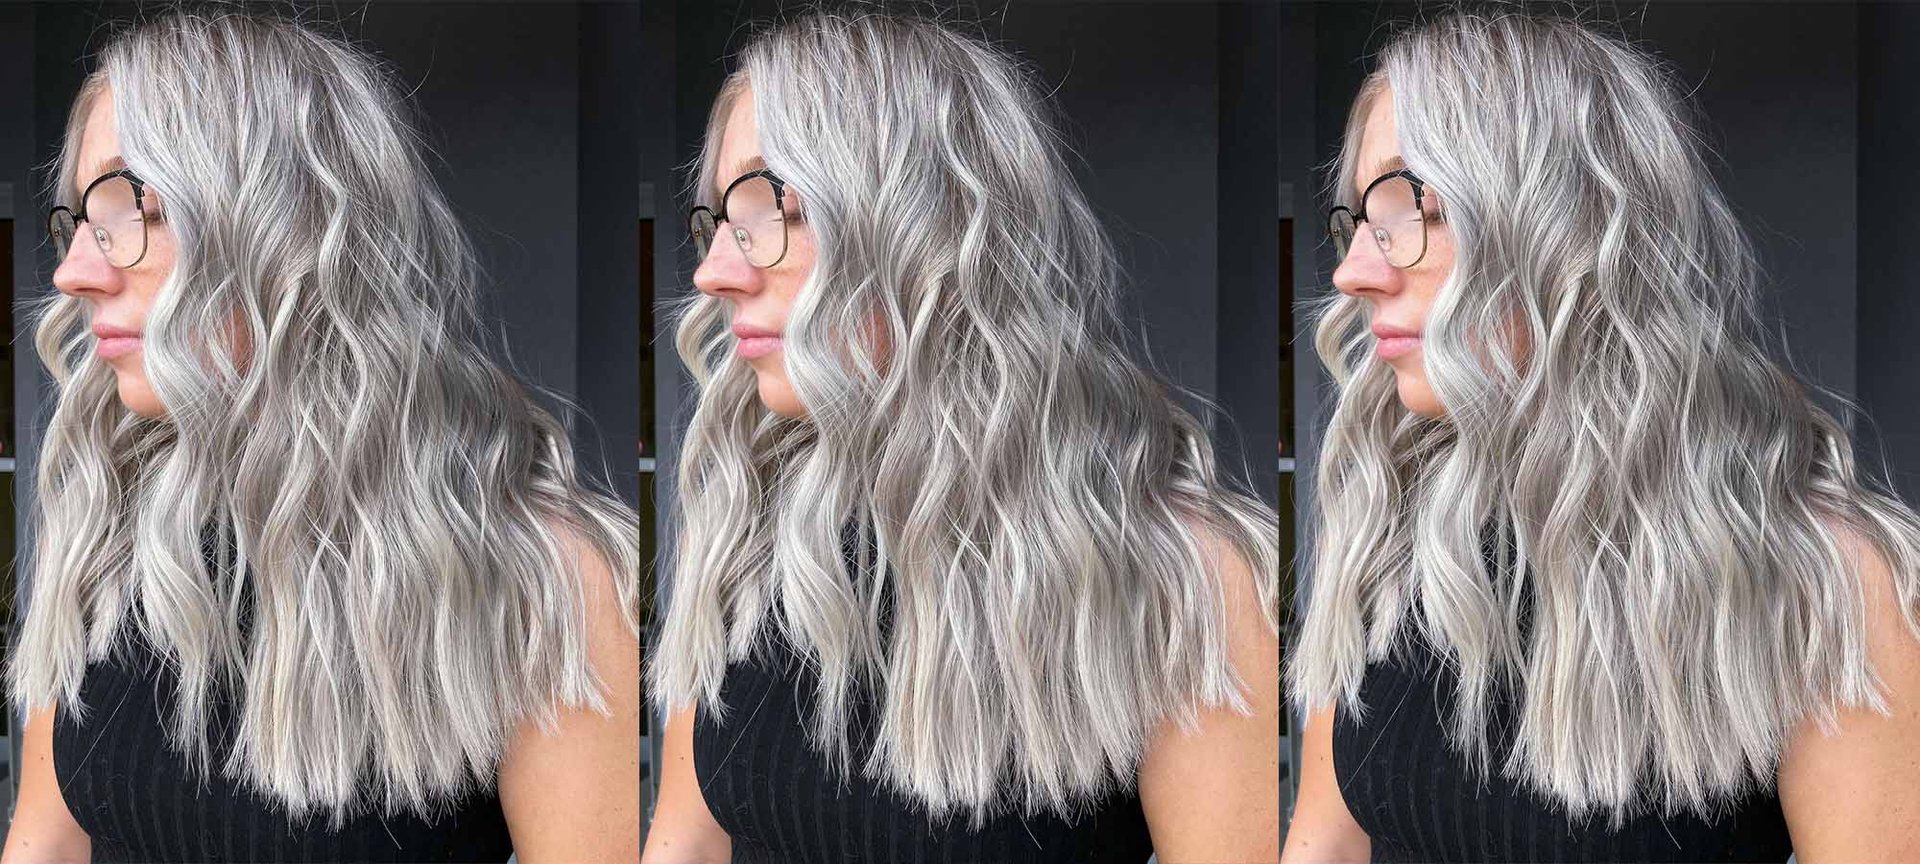 How To Get A Silver Blonde Hair Color - L'Oréal Paris